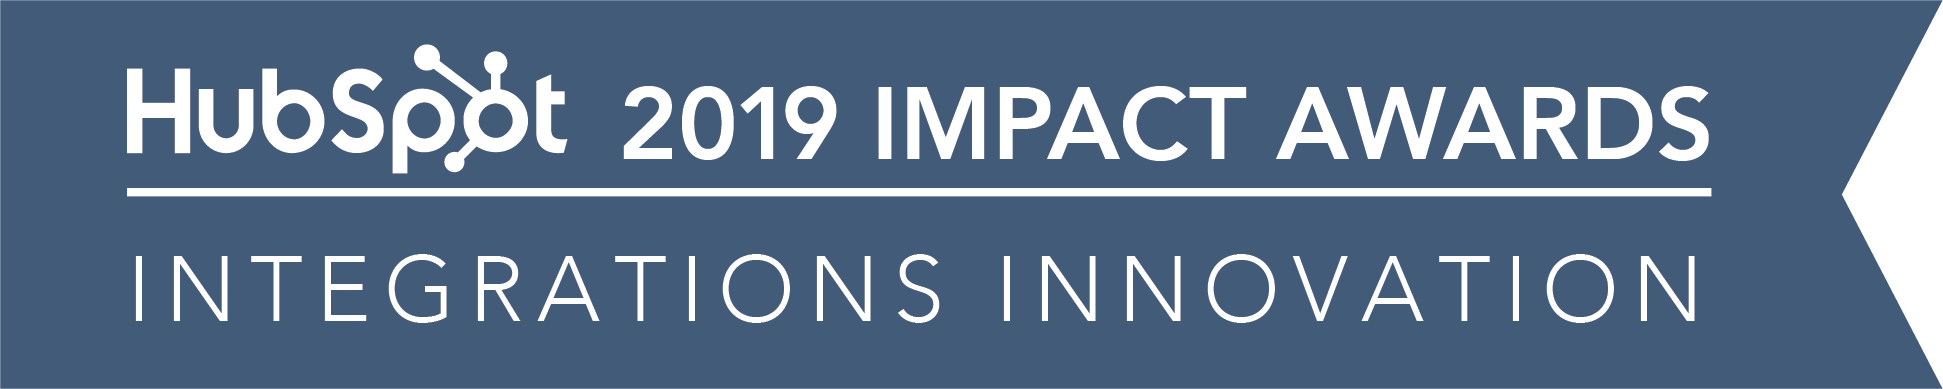 Hubspot_ImpactAwards_2019_IntegrationsInnovation-02 (3)